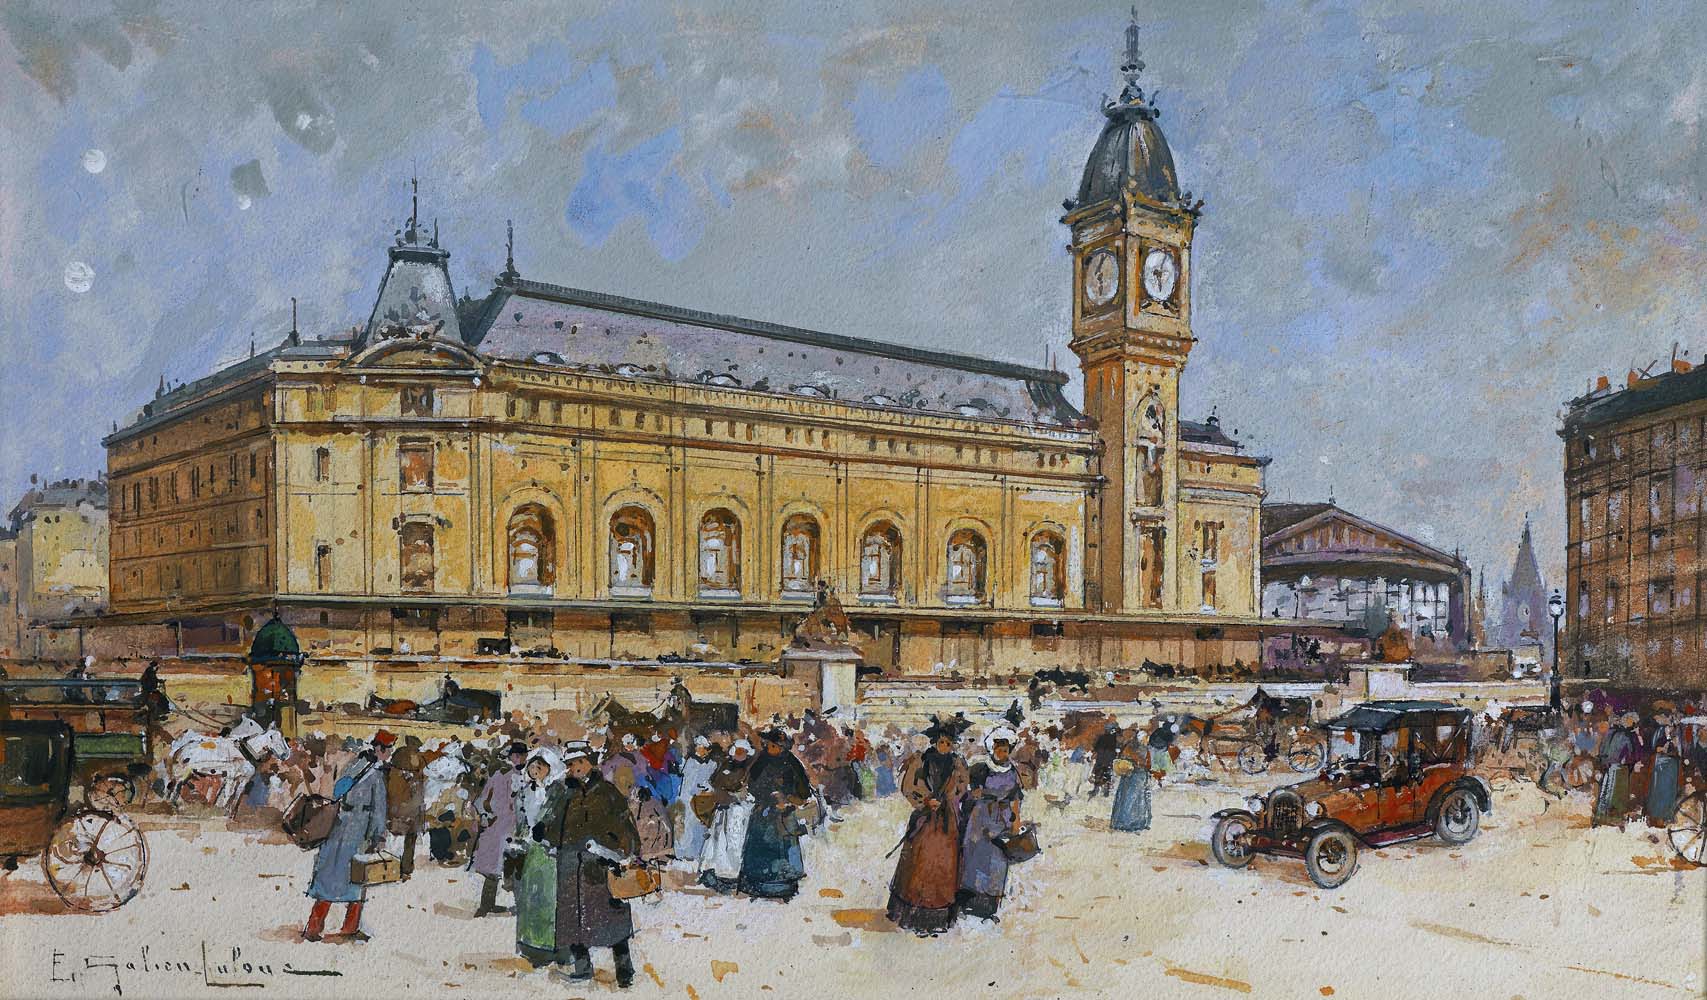 1910 - Gare de Lyon